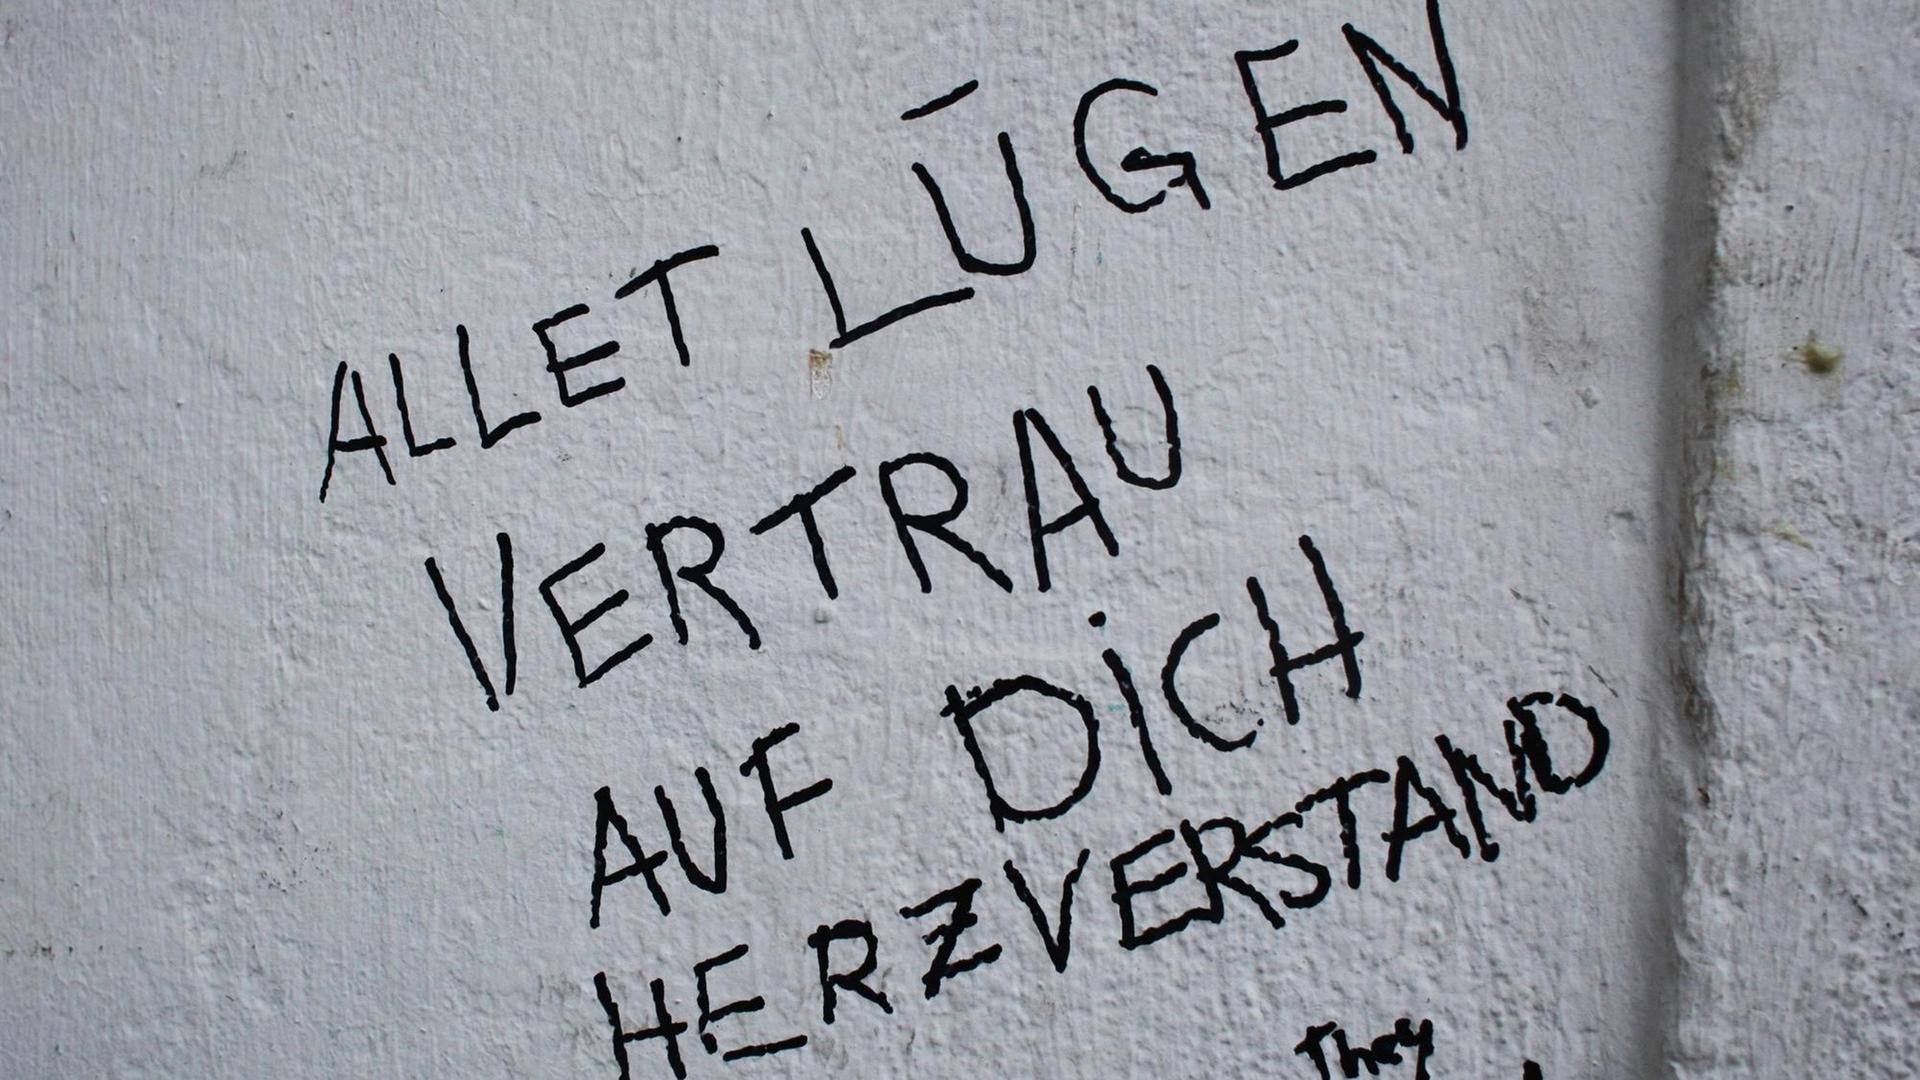 Auf einer Wand steht mit Filzschrift geschrieben: "Allet Lügen. Vertrau auf dich, Herzverstand"